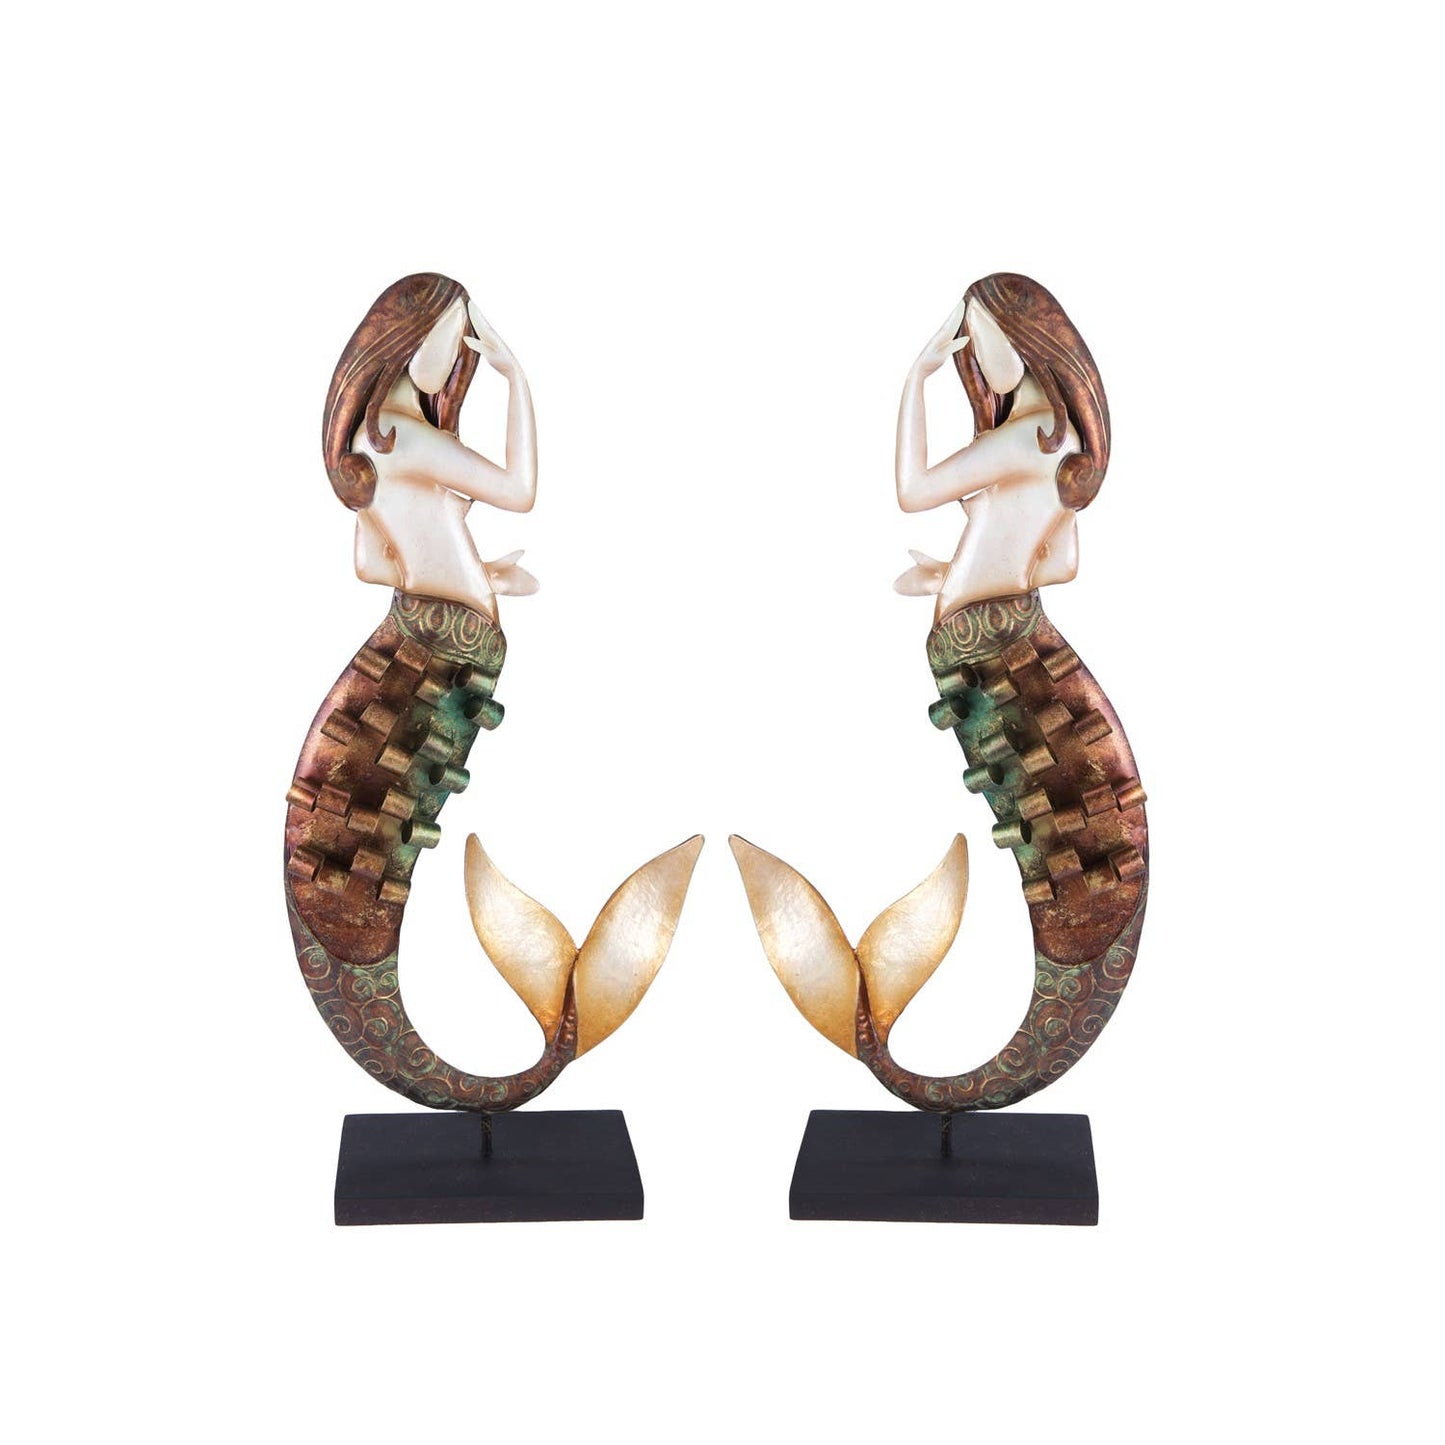 Beachcombers - Set of 2 Metal Mermaid Figures